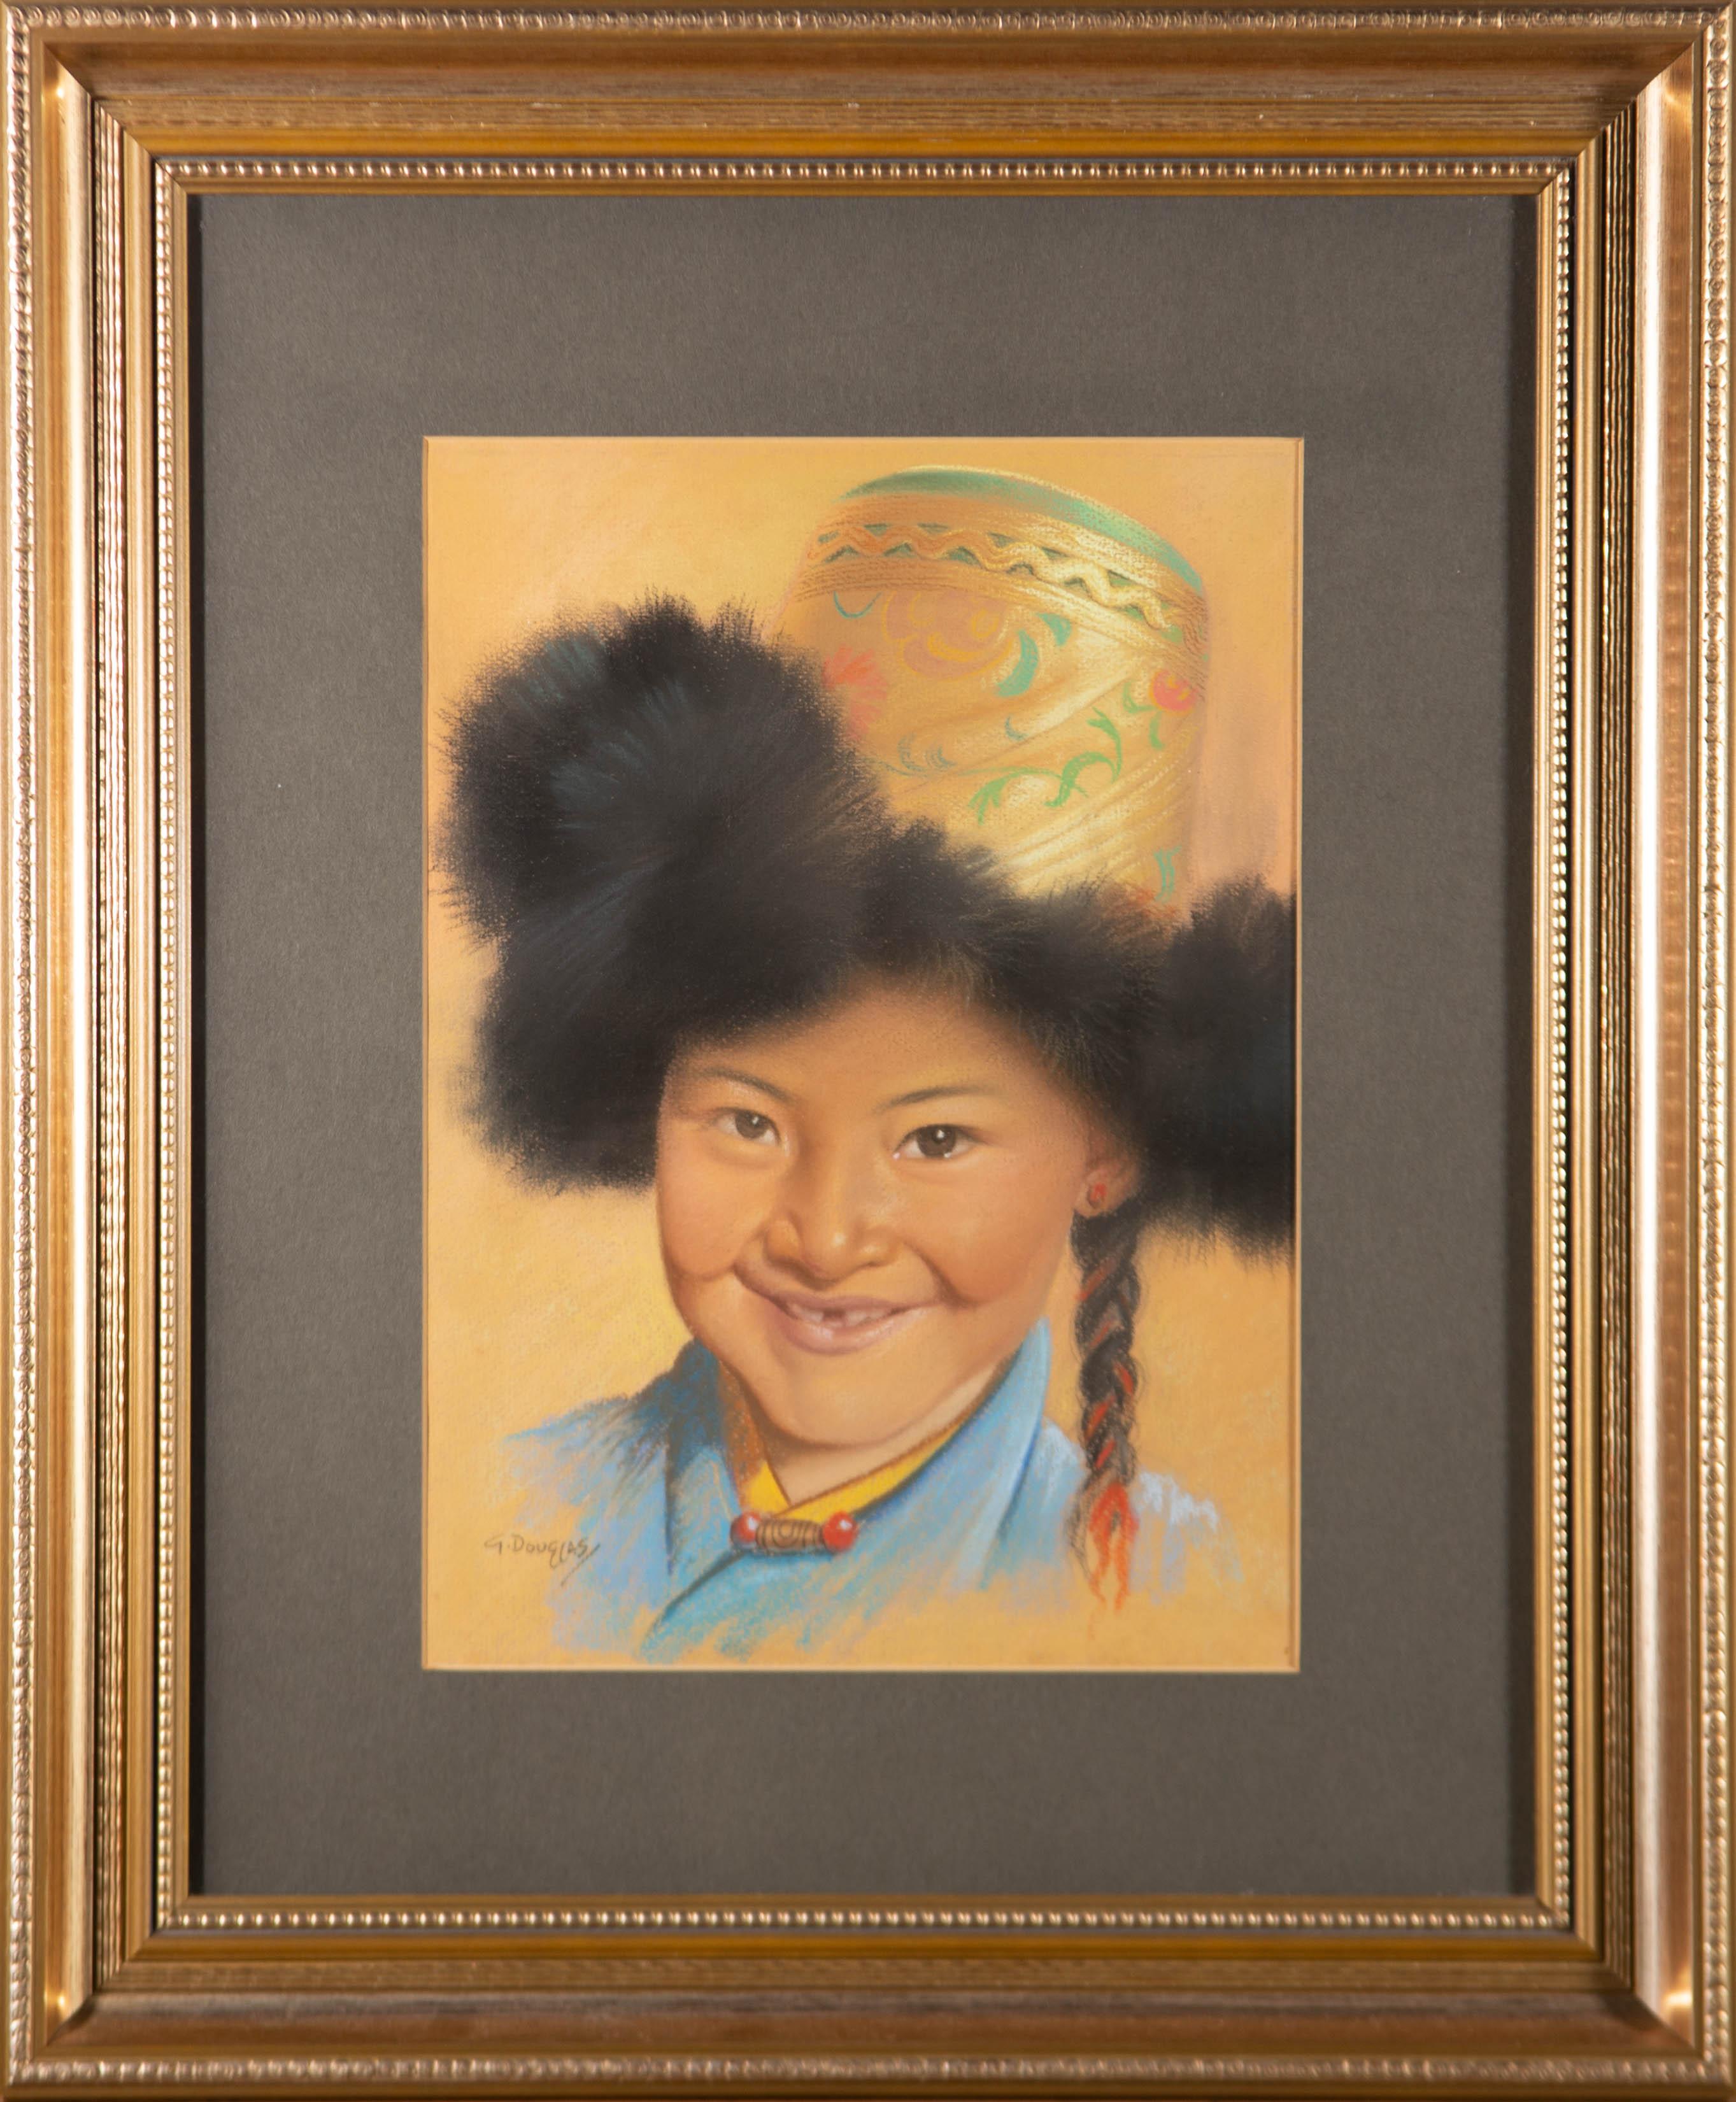 Ein lebhaftes und fröhliches Porträt eines jungen Mädchens in traditioneller tibetischer Kleidung mit einem breiten Lächeln und geflochtenem Haar. Der Künstler zeigt eine geschickte Hand mit dem Medium und hat eine große Menge an Charakter und Spaß